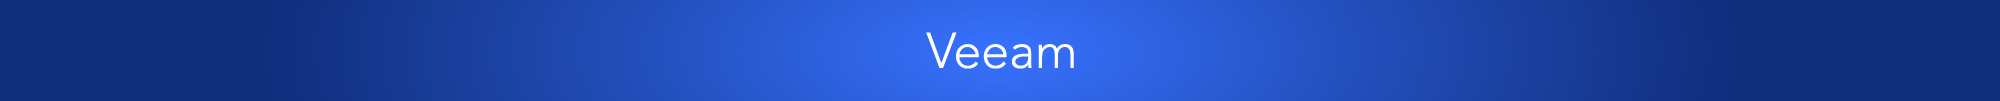 Veeam blue banner 